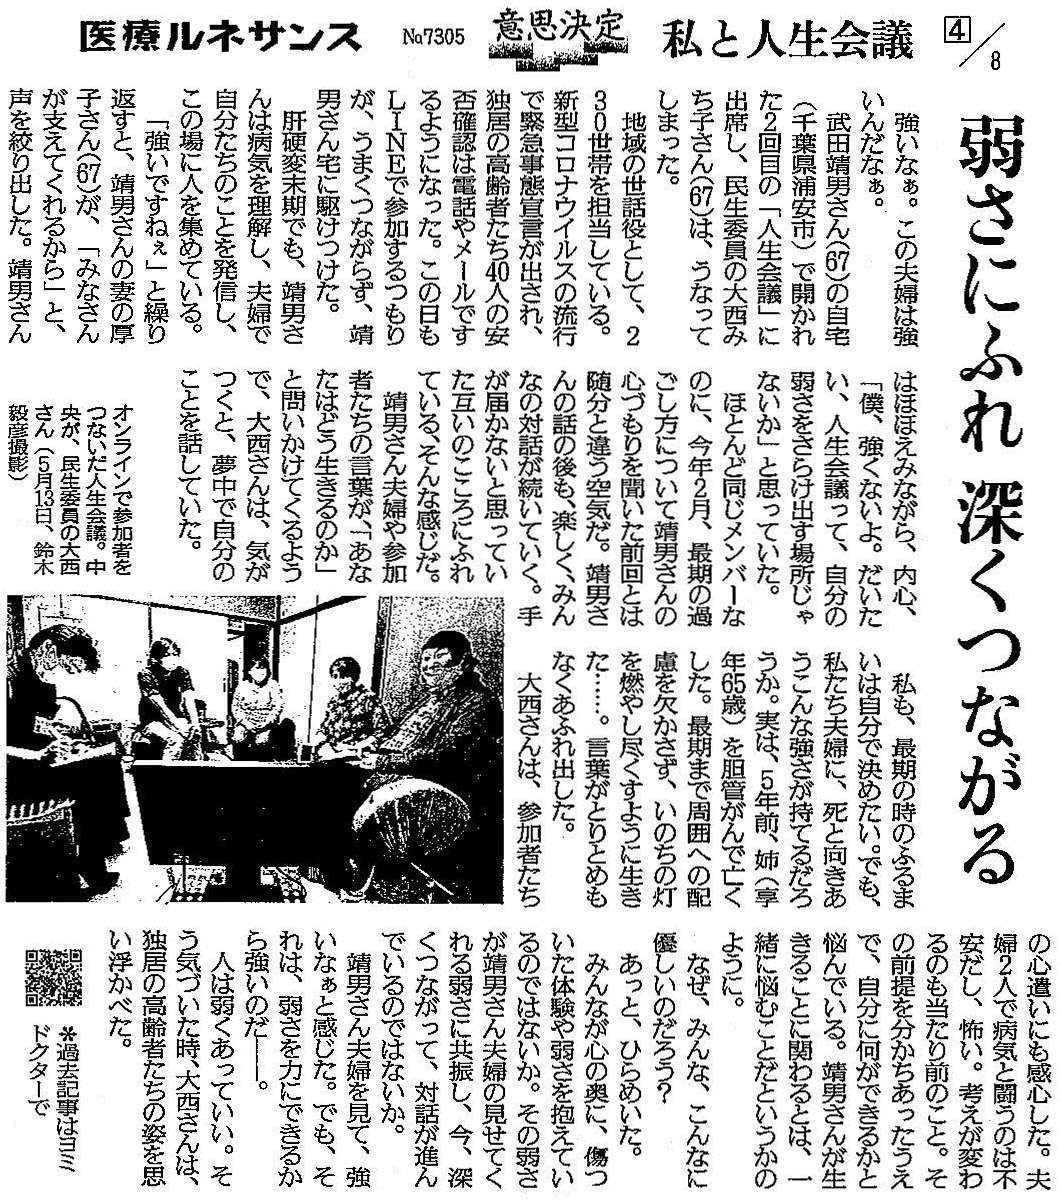 読売新聞 2020年6月17日 掲載記事